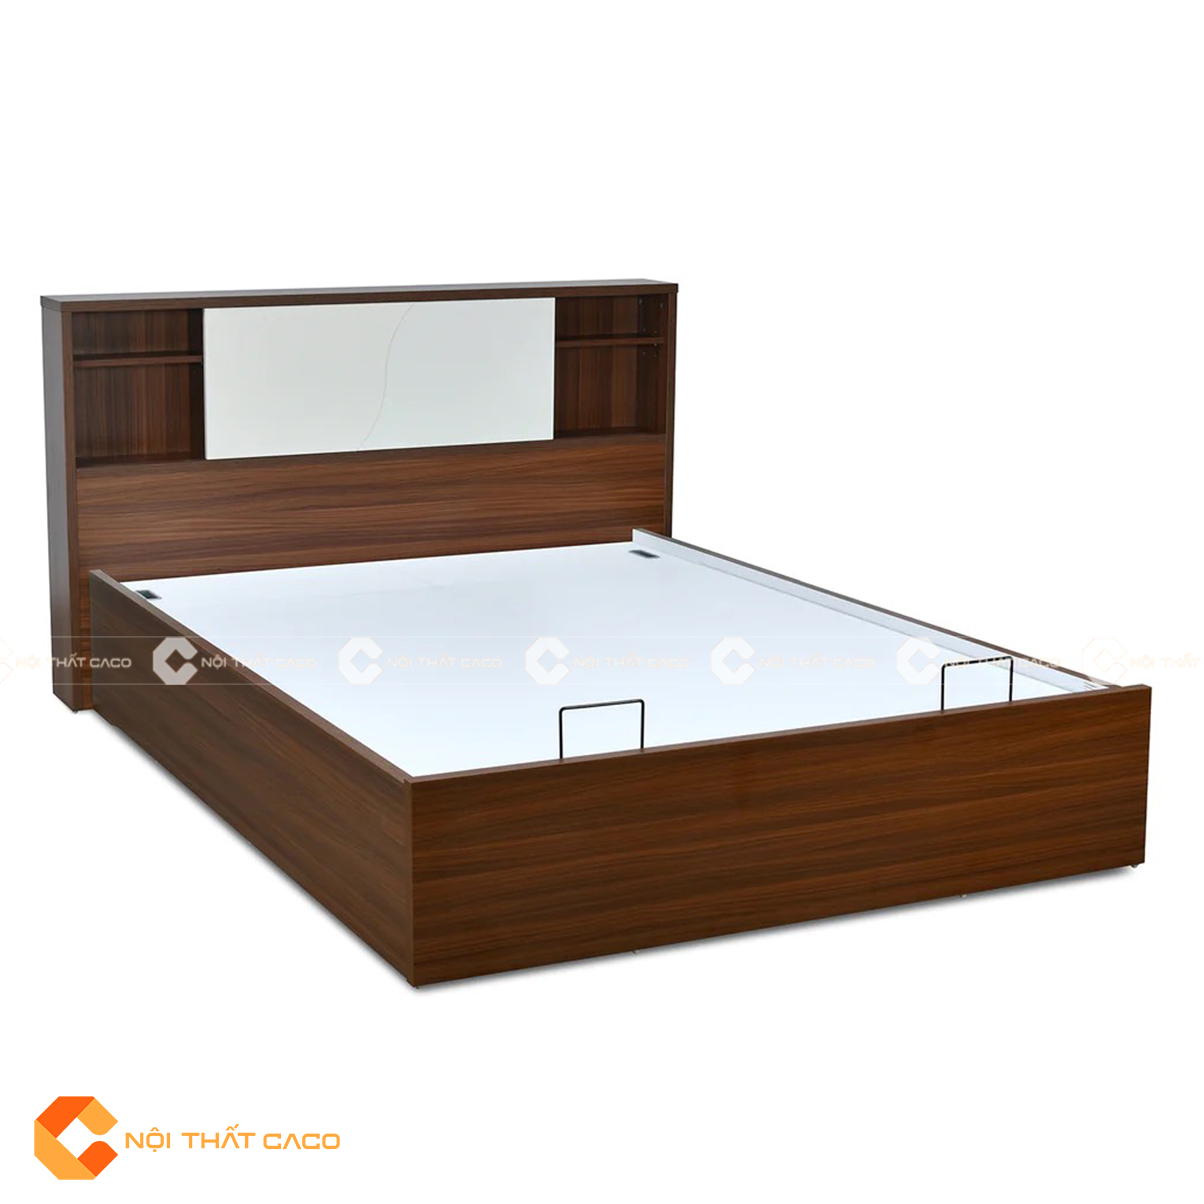 Giường ngủ gỗ công nghiệp hiện đại có ngăn lưu trữ đồ đạc